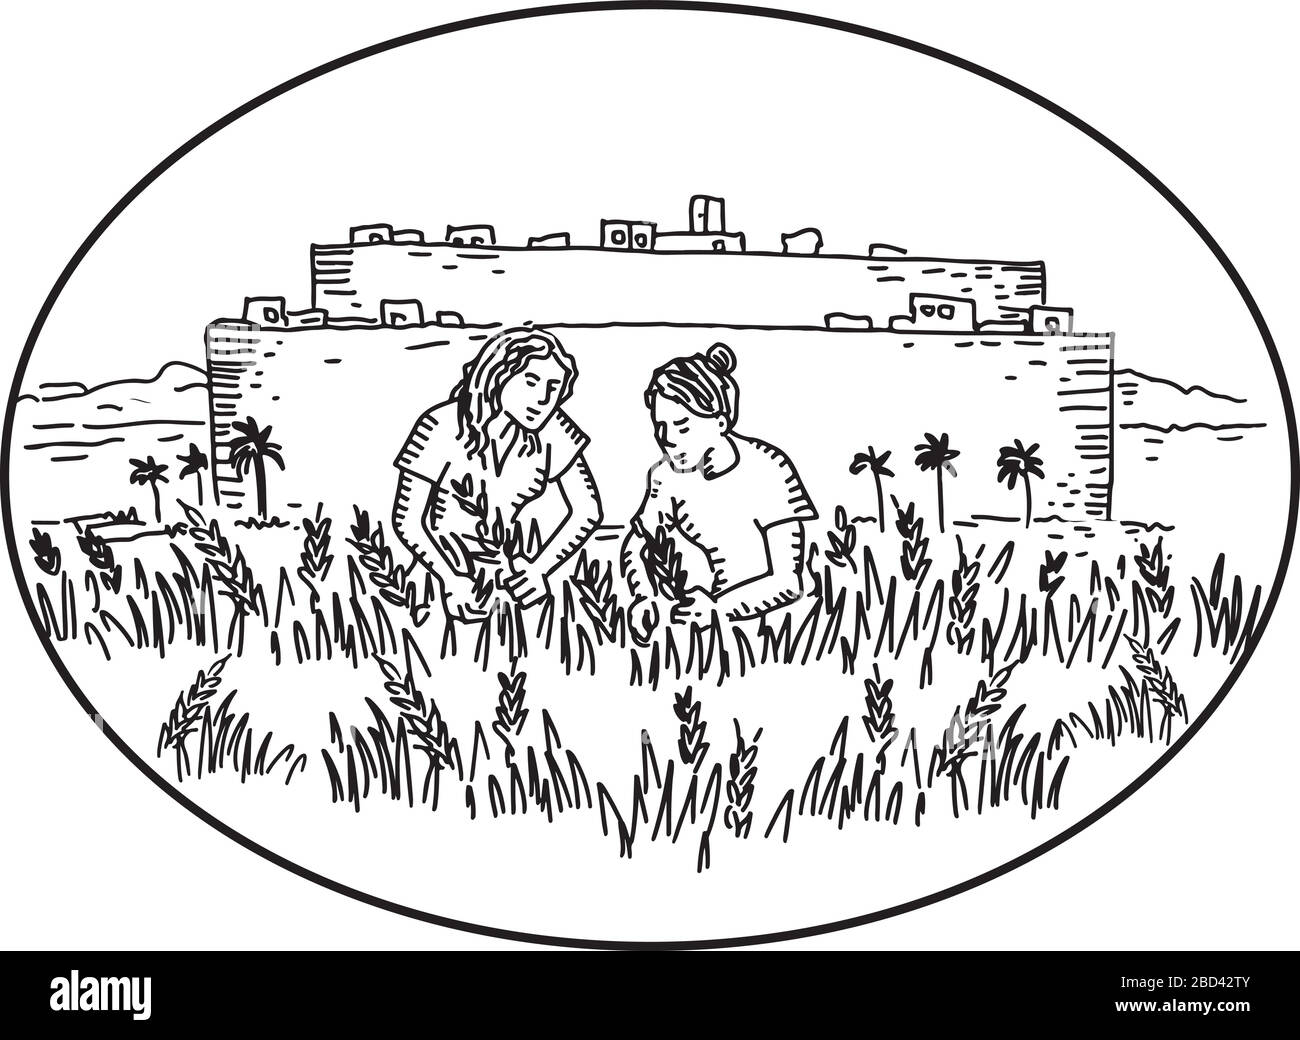 Illustrazione di stile retro di due donne che raccolgono o raccolgono il grano in fattoria fuori di una città murata situata all'interno di forma ovale su sfondo isolato fatto dentro Illustrazione Vettoriale